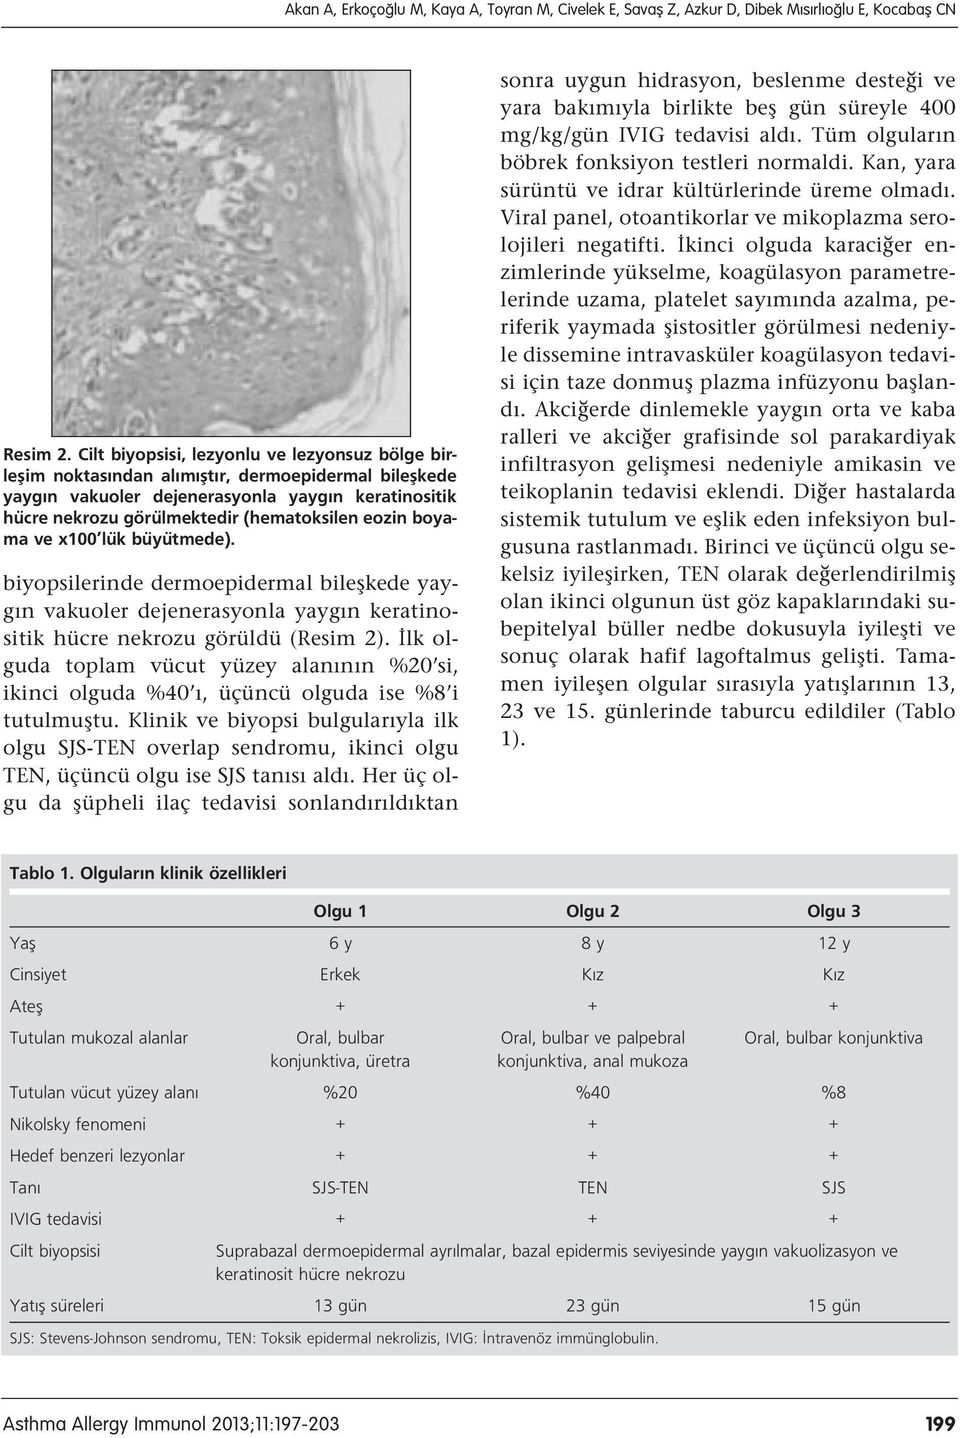 eozin boyama ve x100 lük büyütmede). biyopsilerinde dermoepidermal bileşkede yaygın vakuoler dejenerasyonla yaygın keratinositik hücre nekrozu görüldü (Resim 2).